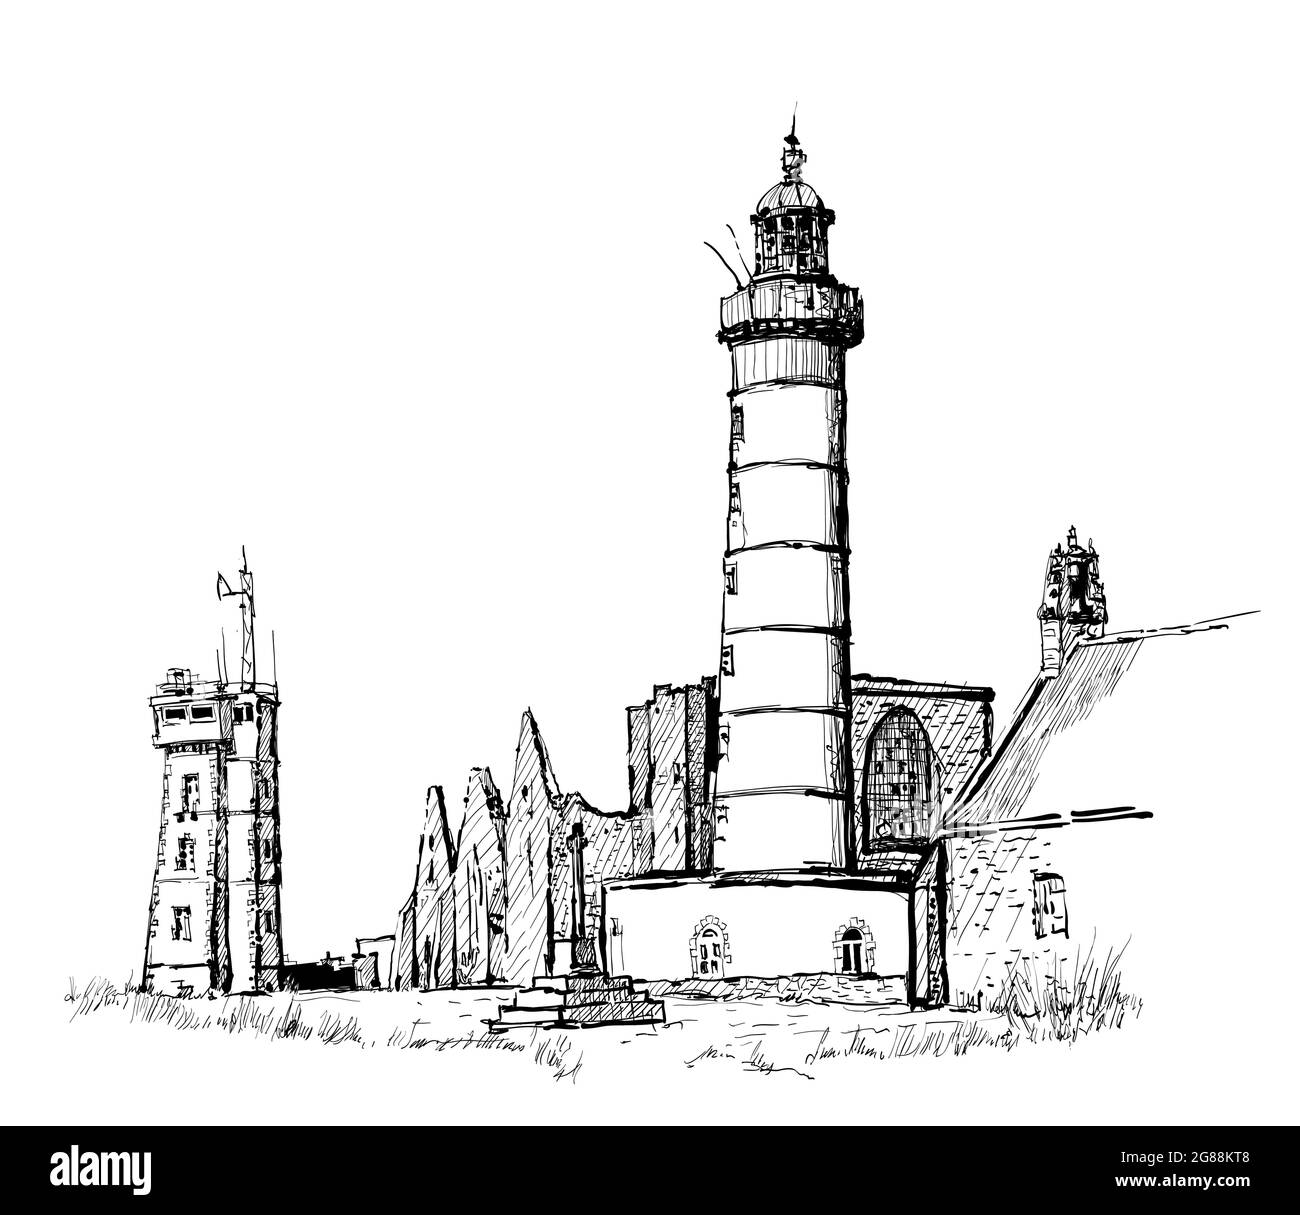 Dessin du phare de Saint Mathieu et des ruines de l'ancienne abbaye en Bretagne, France - illustration vectorielle Illustration de Vecteur